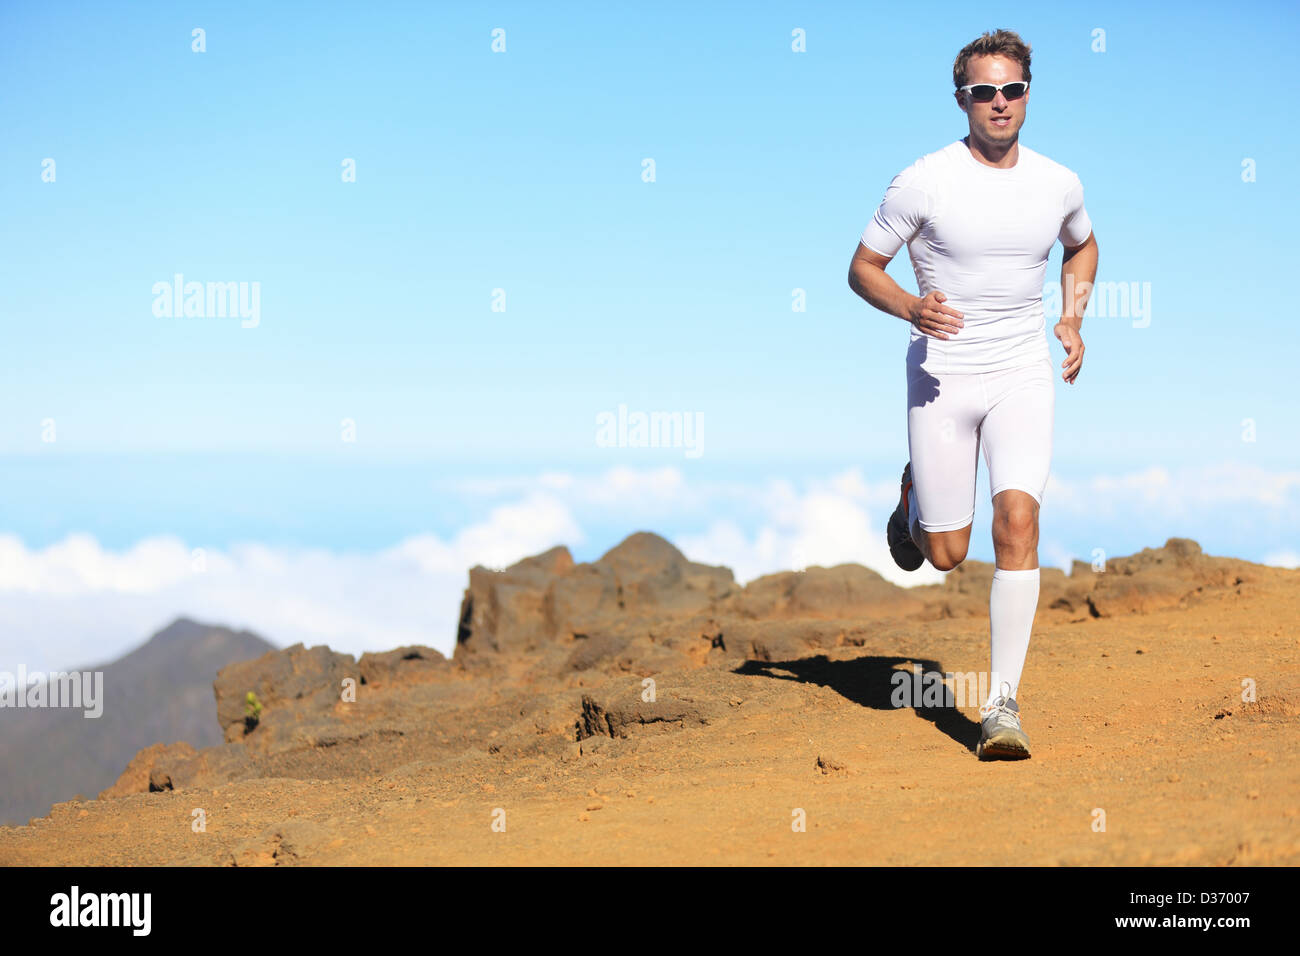 Voller Länge der sportlich fit sportlichen Mann im Kompression Kleidung laufen Marathon laufen in landschaftlich Stockfoto